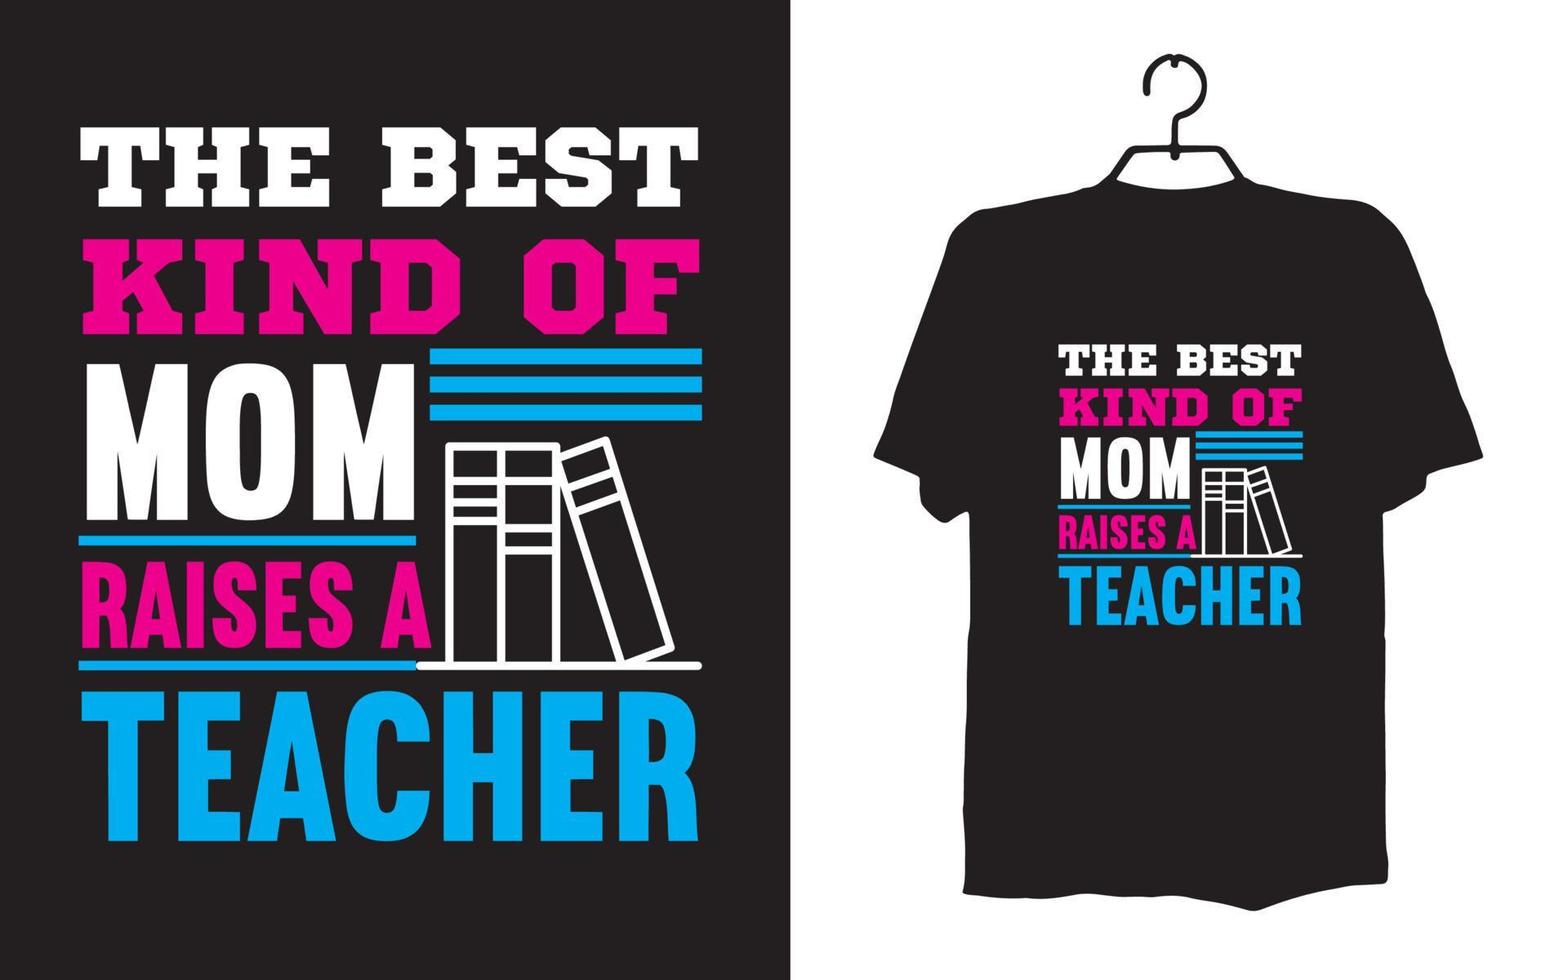 Drucken Sie Lehrer-T-Shirt-Designs vektor